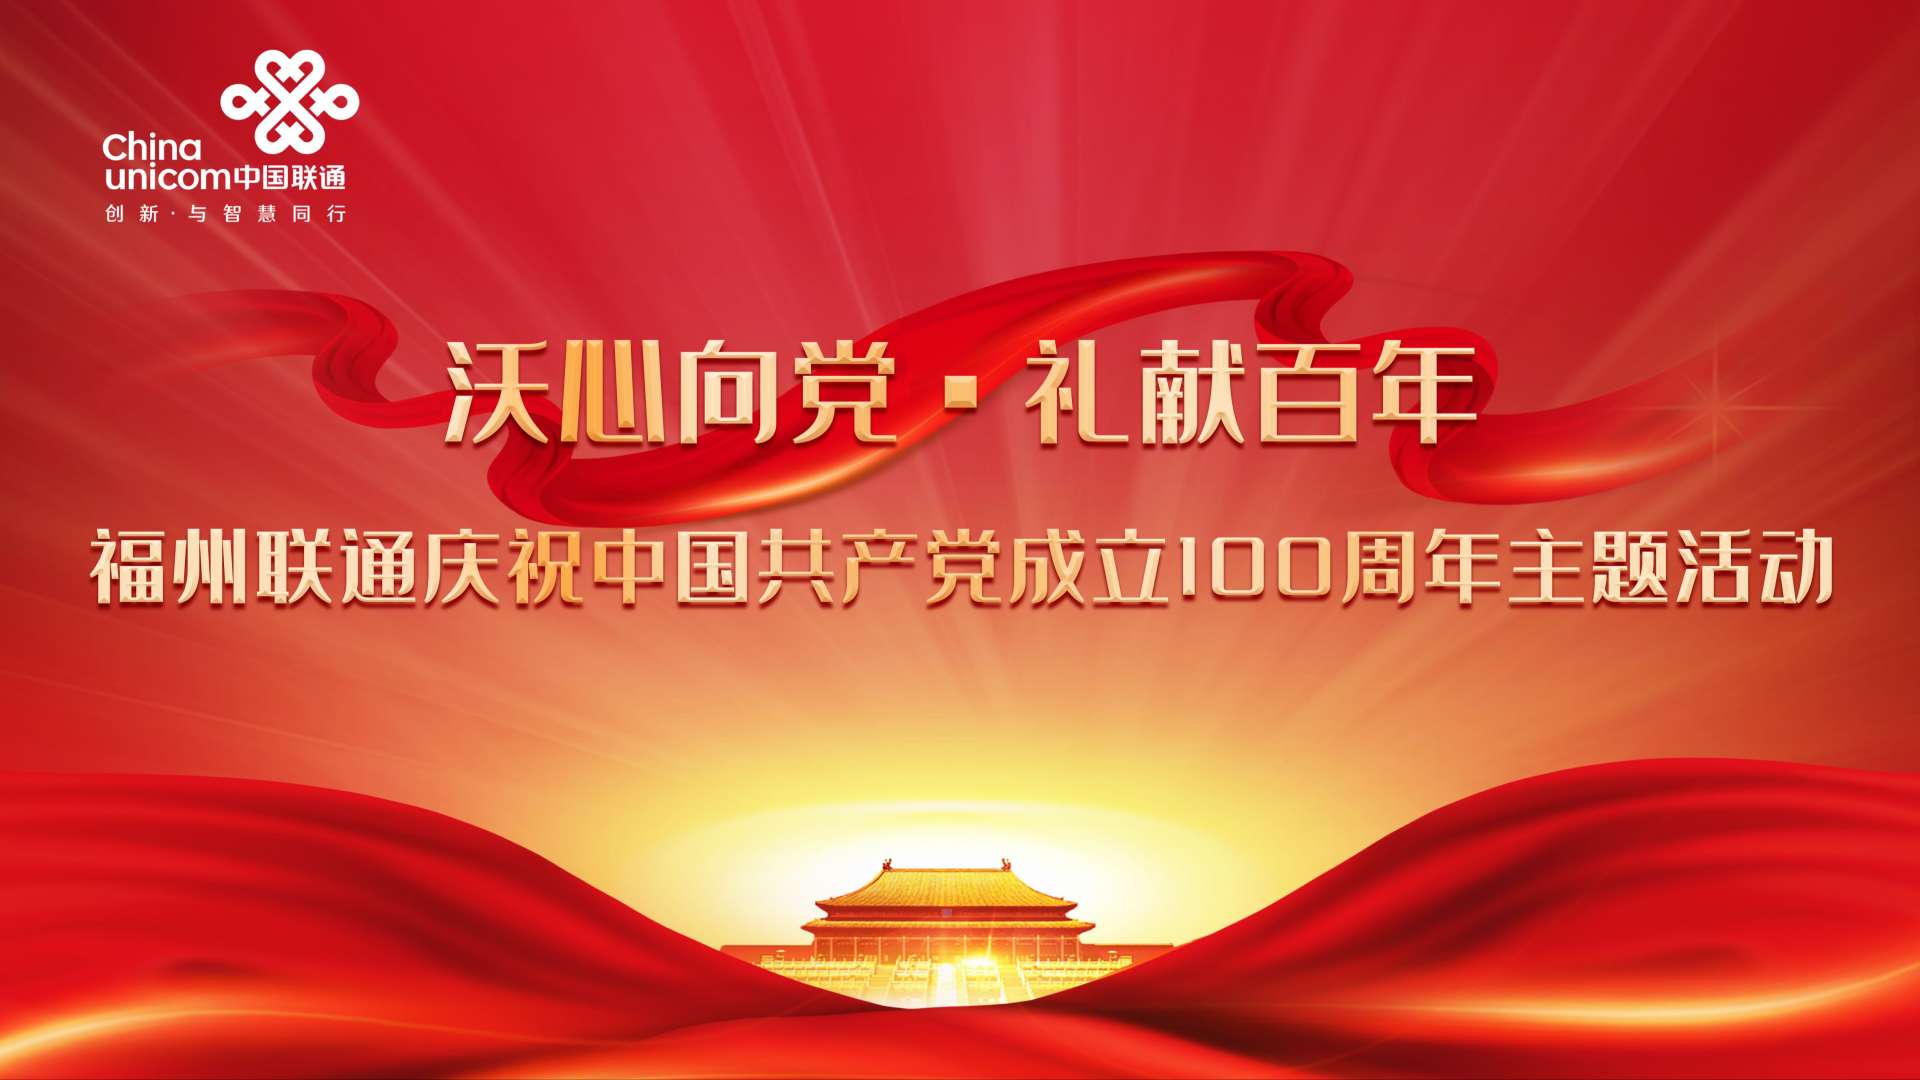 福州联通庆祝党建100周年主题活动集锦